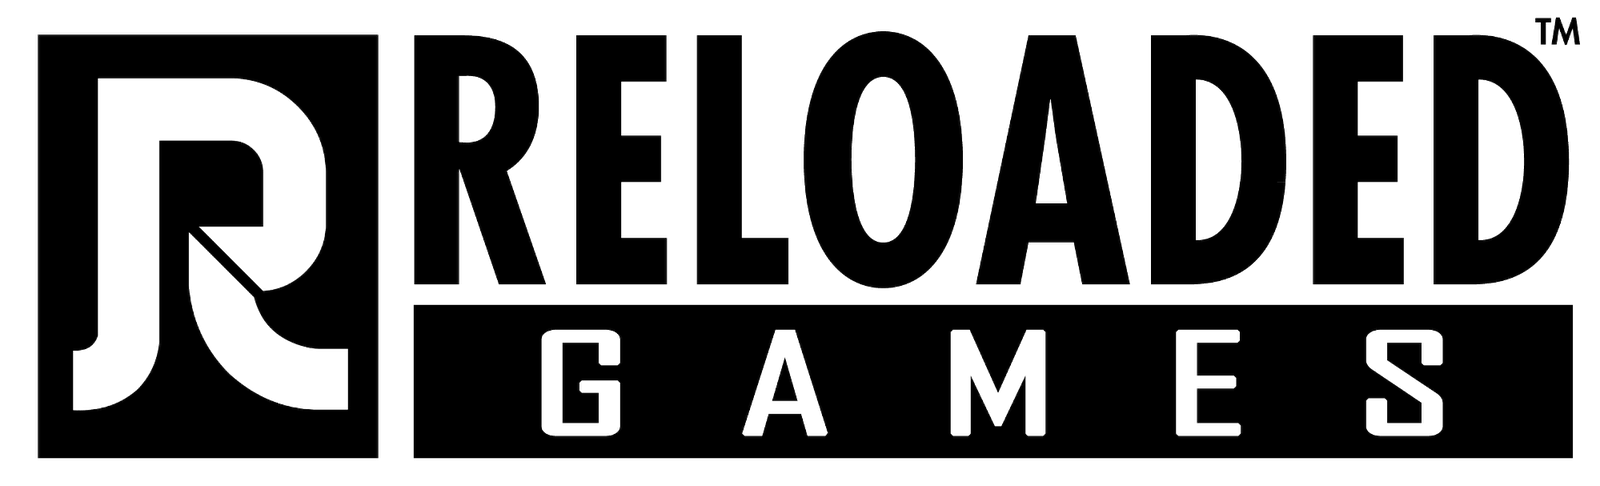 Reloaded-games-logo.png